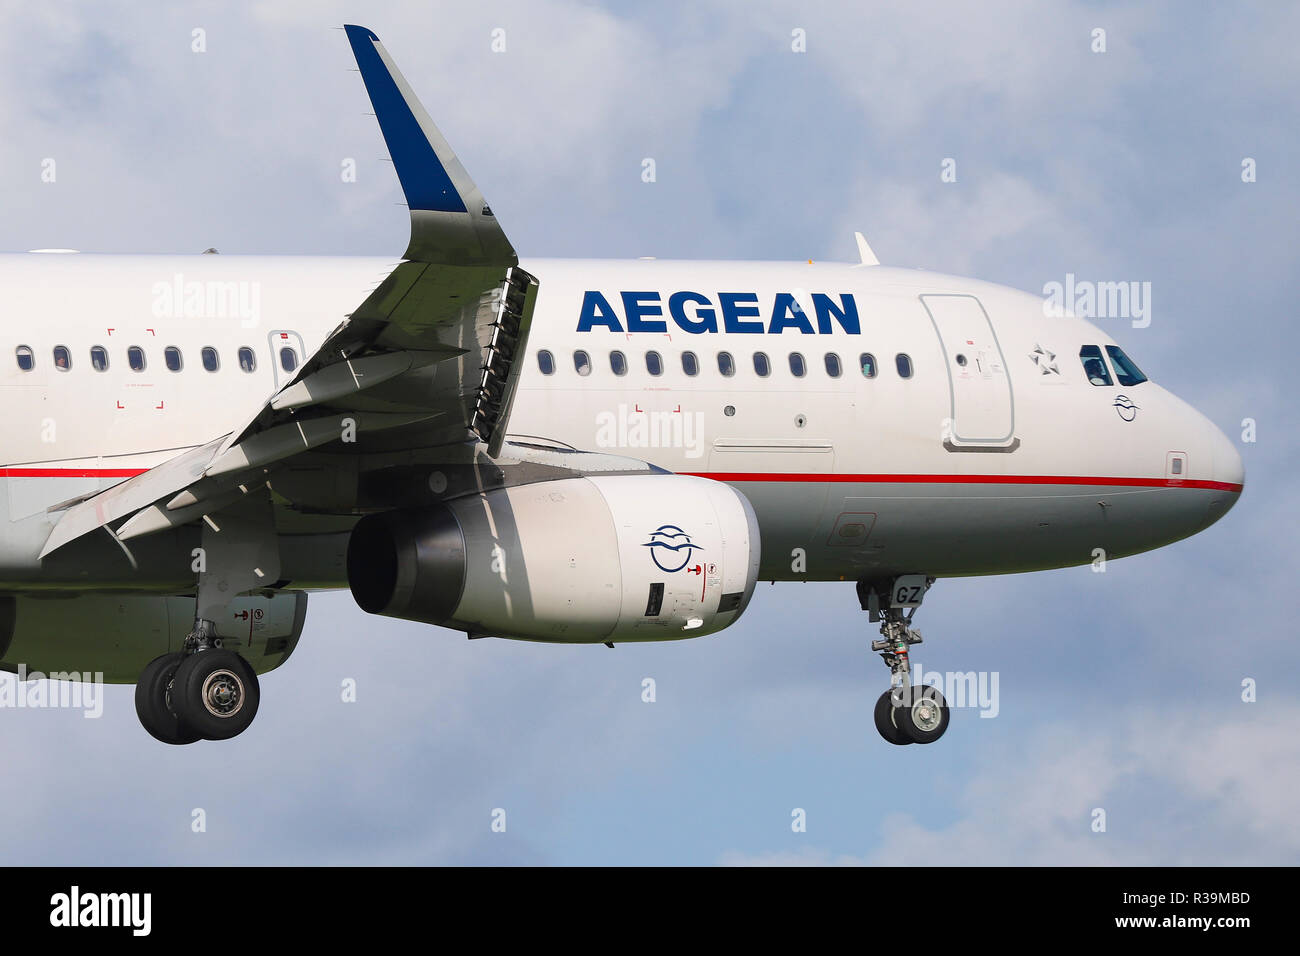 Aegean Airlines Airbus A320-232(WL) vu l'atterrissage à l'aéroport international Schiphol d'Amsterdam au cours d'une journée d'été. Aegean Airlines relie Athènes à Amsterdam toute l'année. Banque D'Images